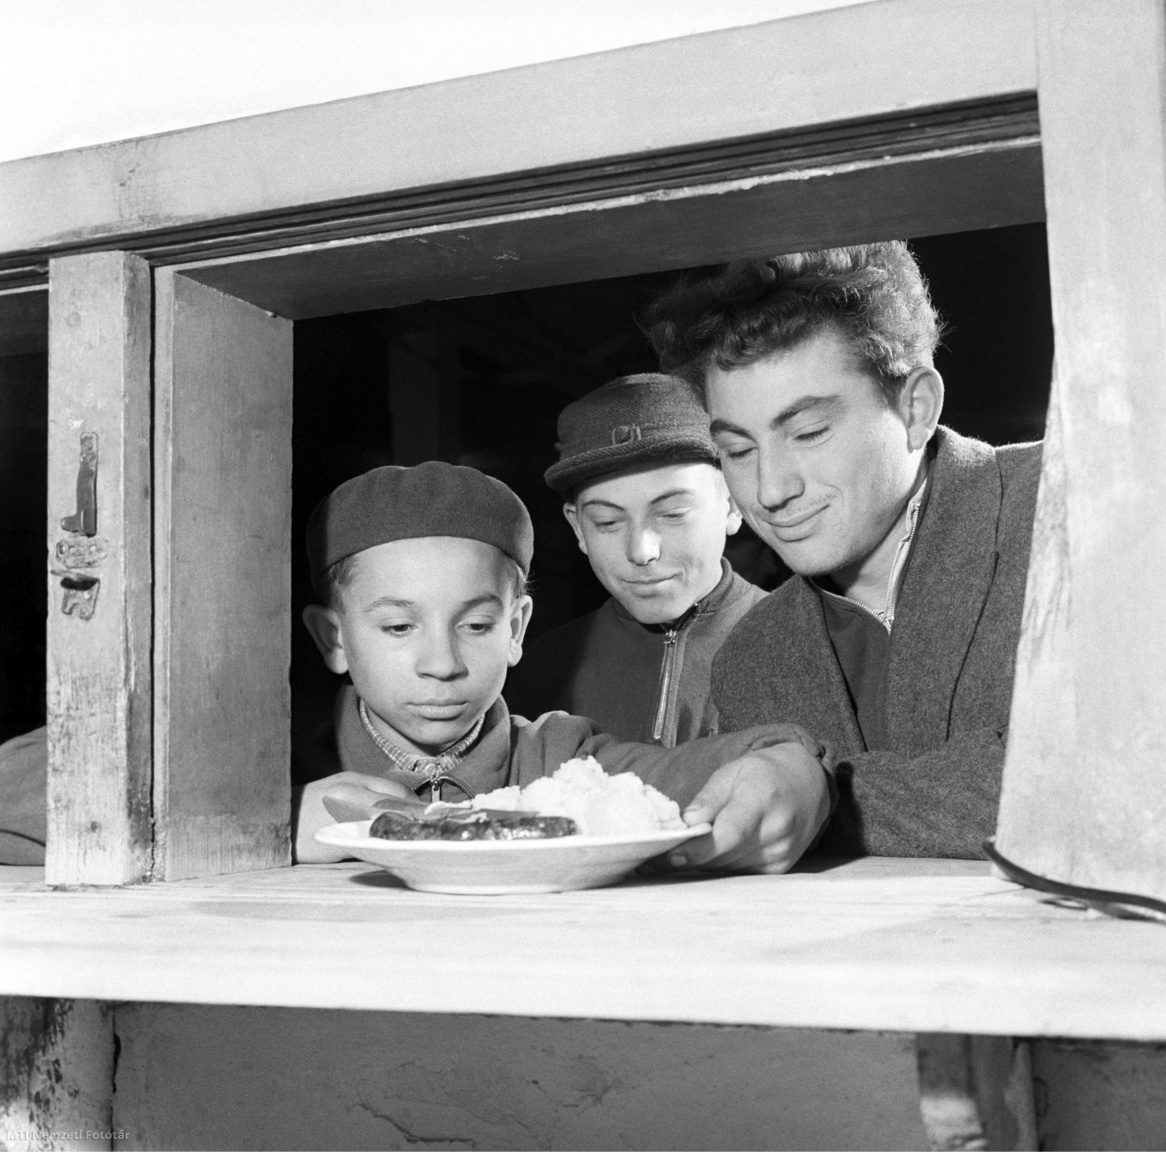 Magyarország, 1959. november 6. Diákok sorban állnak az ebédért a konyha kiadóablakánál. A felvétel készítésének pontos helyszíne ismeretlen